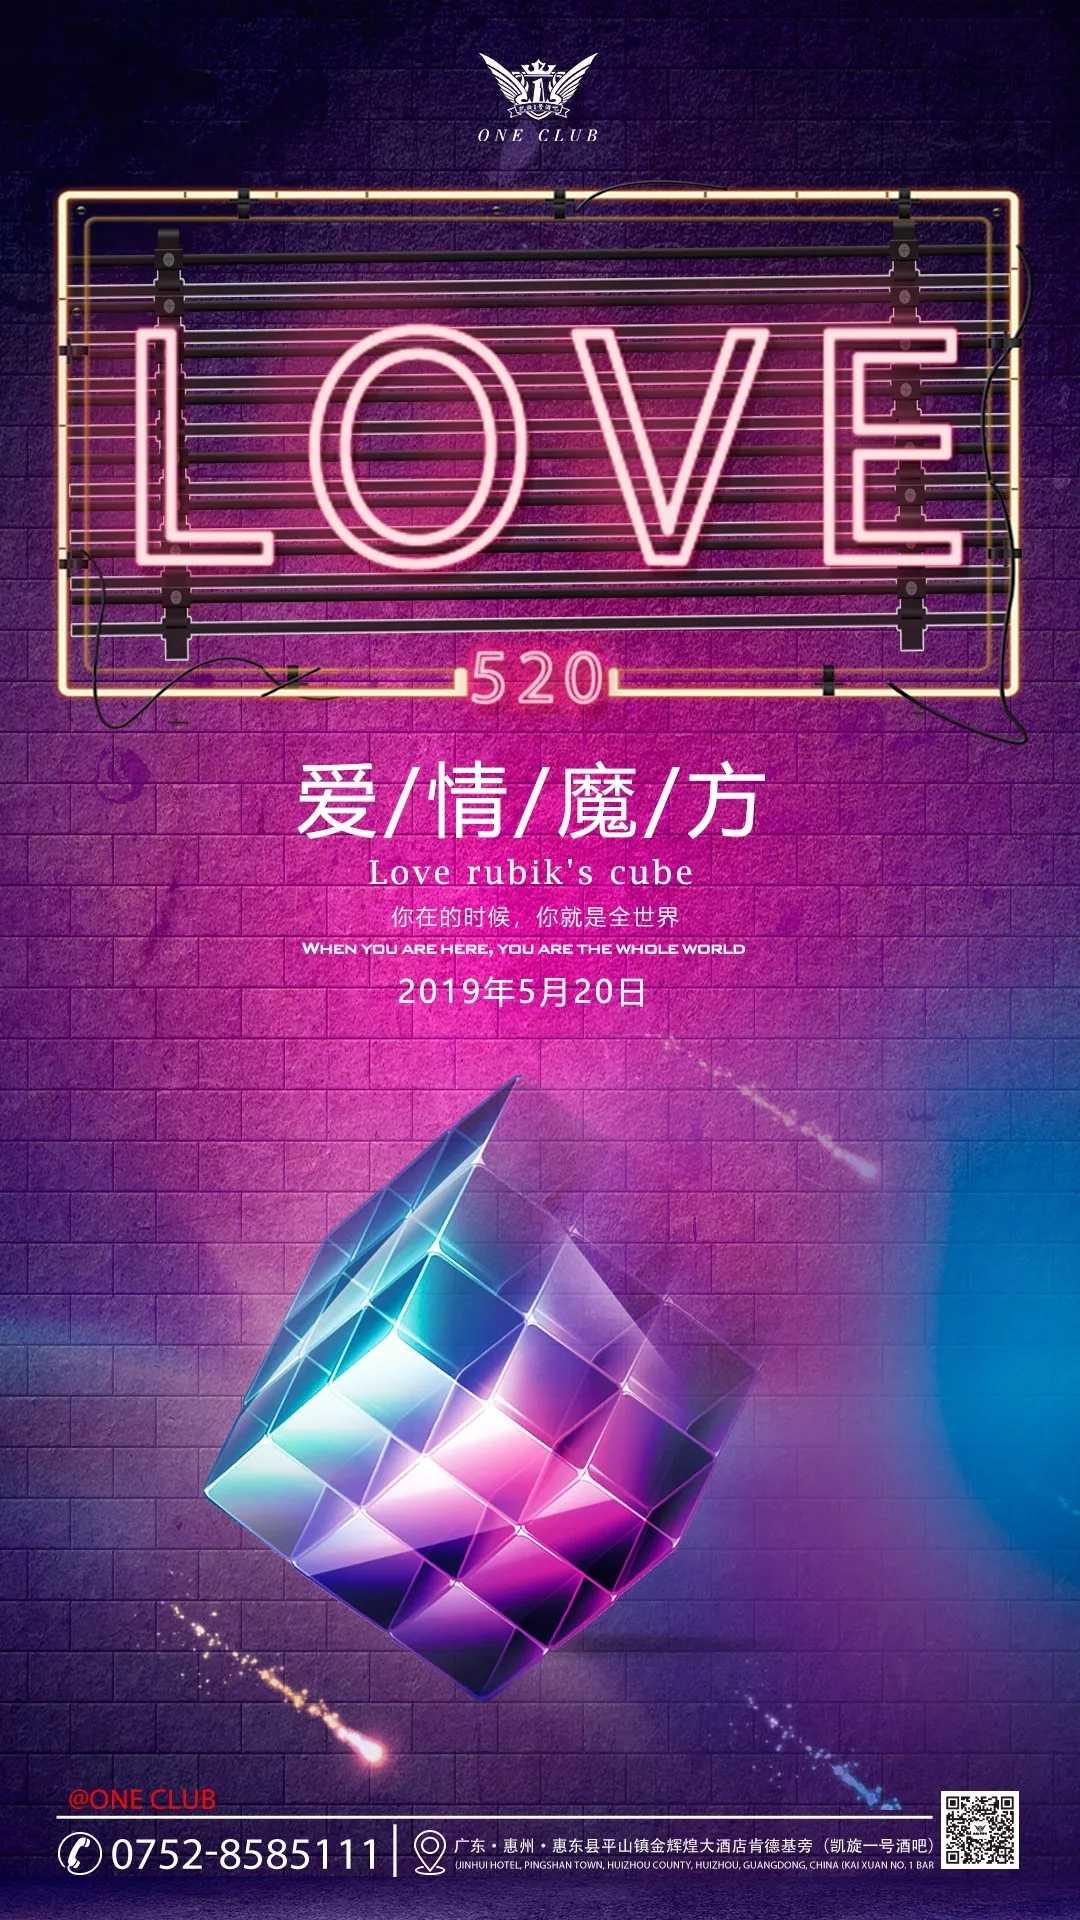 惠东凯旋1号酒吧 5.20情人节海报